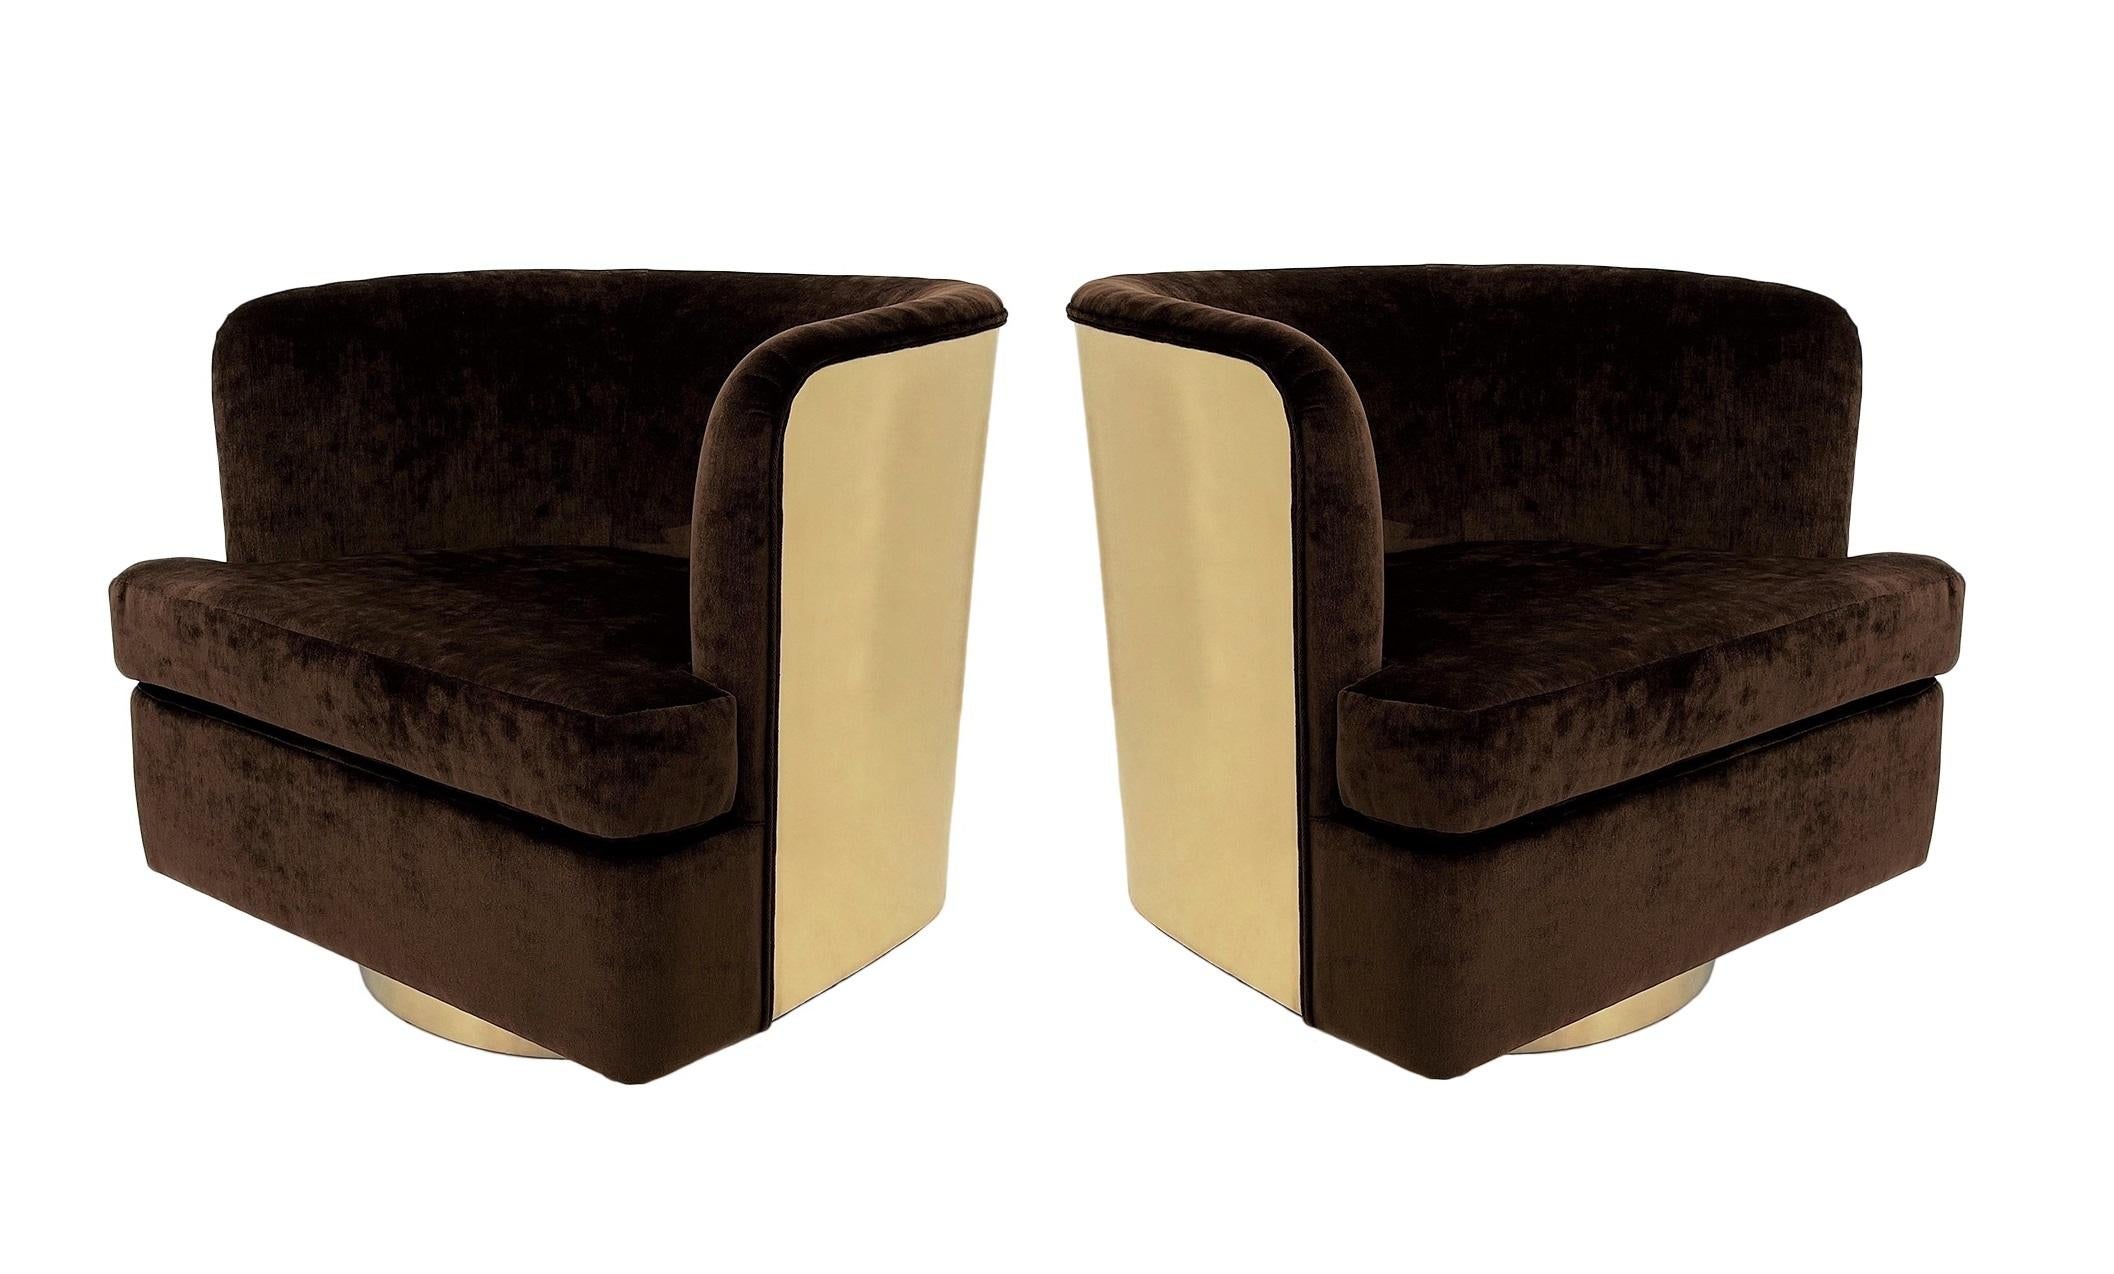 Cette superbe paire de chaises barriques de qualité héritière a été réalisée par Milo Baughman pour Thayer Coggin. Chaises pivotantes de très grand style, recouvertes d'un luxueux velours brun qui contraste merveilleusement avec les bases et les